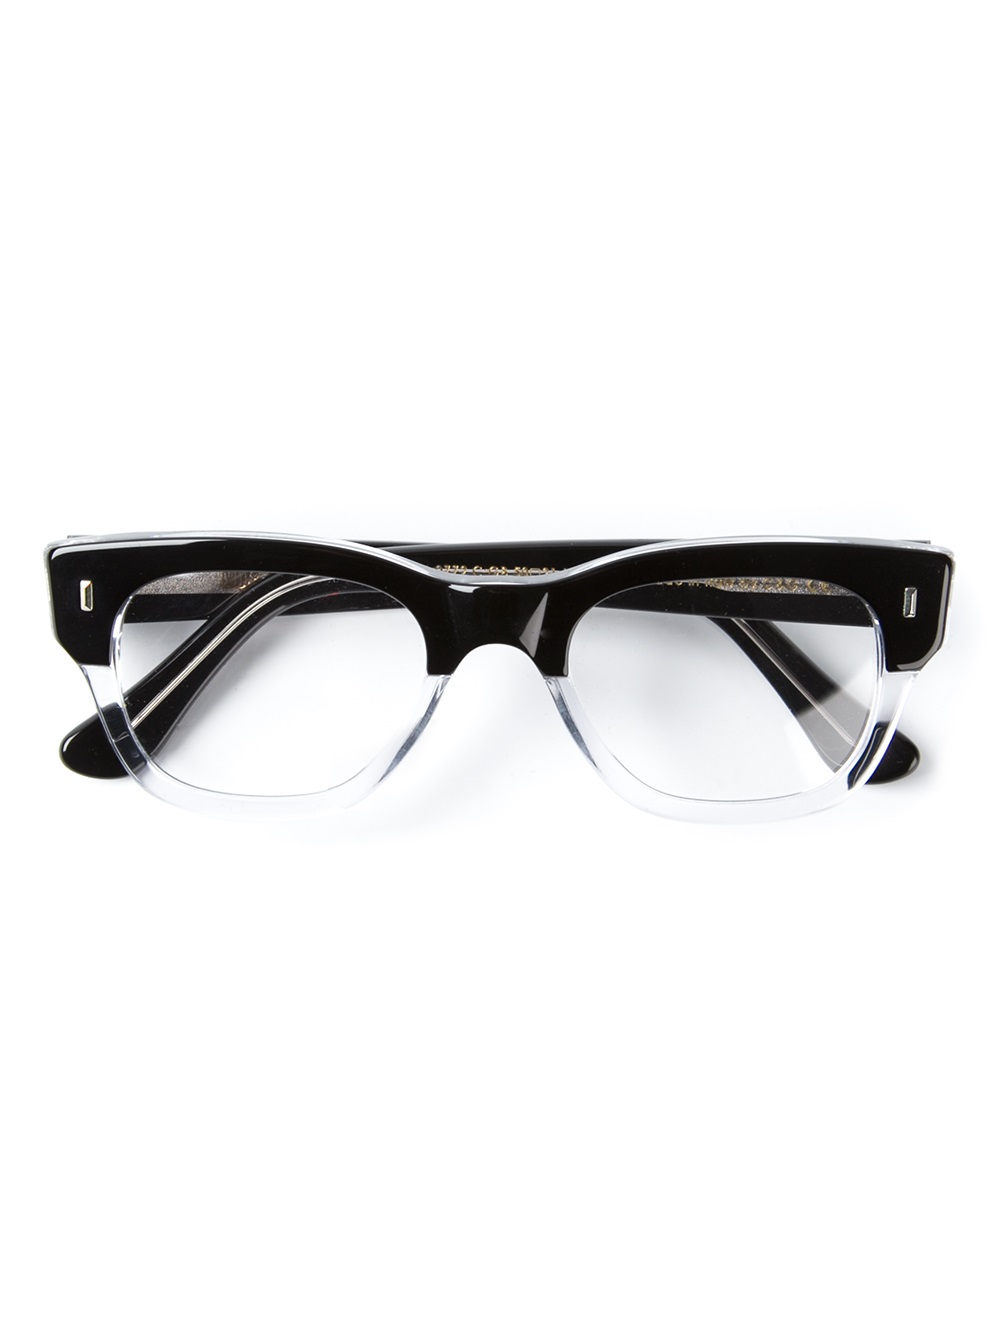 Cutler & Gross Gradient Lenses Rectangular Frames business glasses